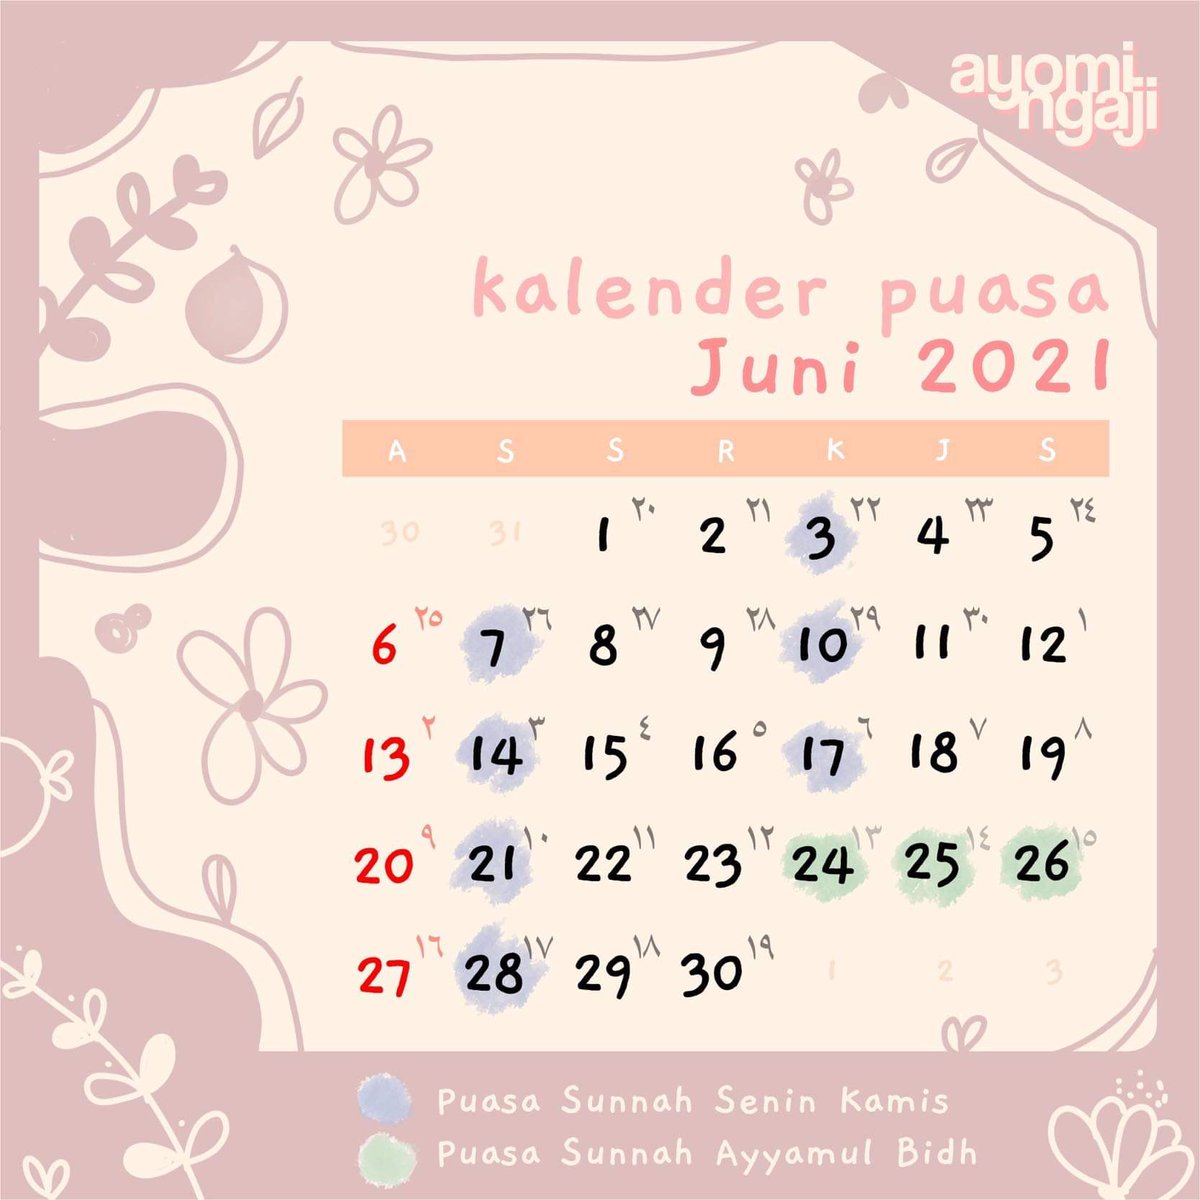 Kalender puasa sunnah 2021